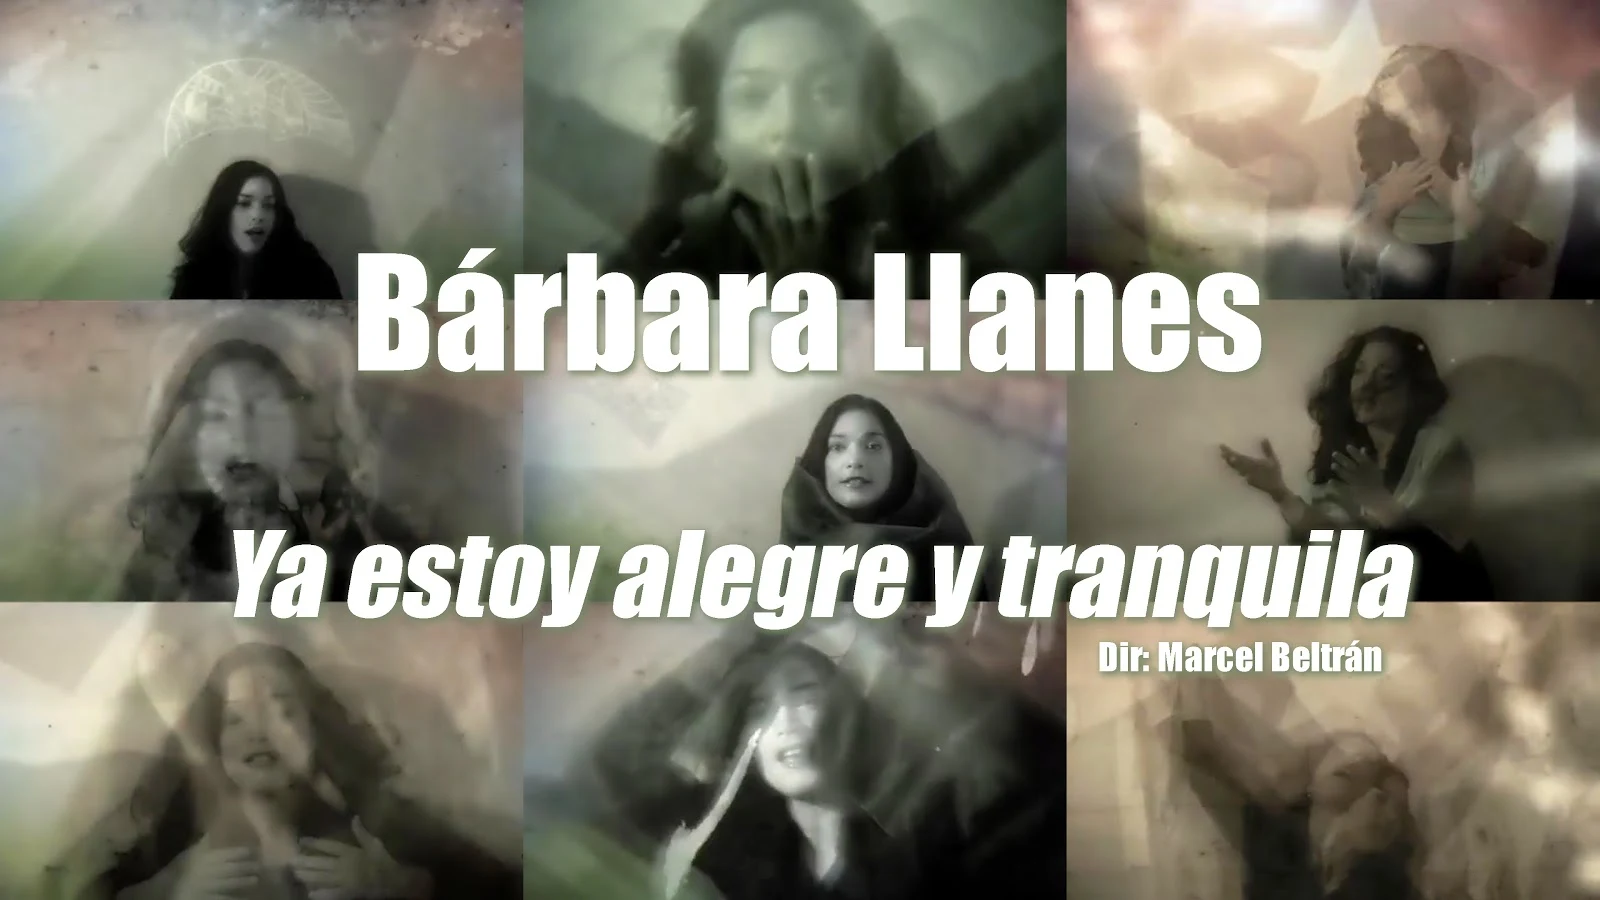 Bárbara Llanes - ¨Ya estoy alegre y tranquila¨ - Videoclip - Dirección: Marcel Beltrán. Portal Del Vídeo Clip Cubano